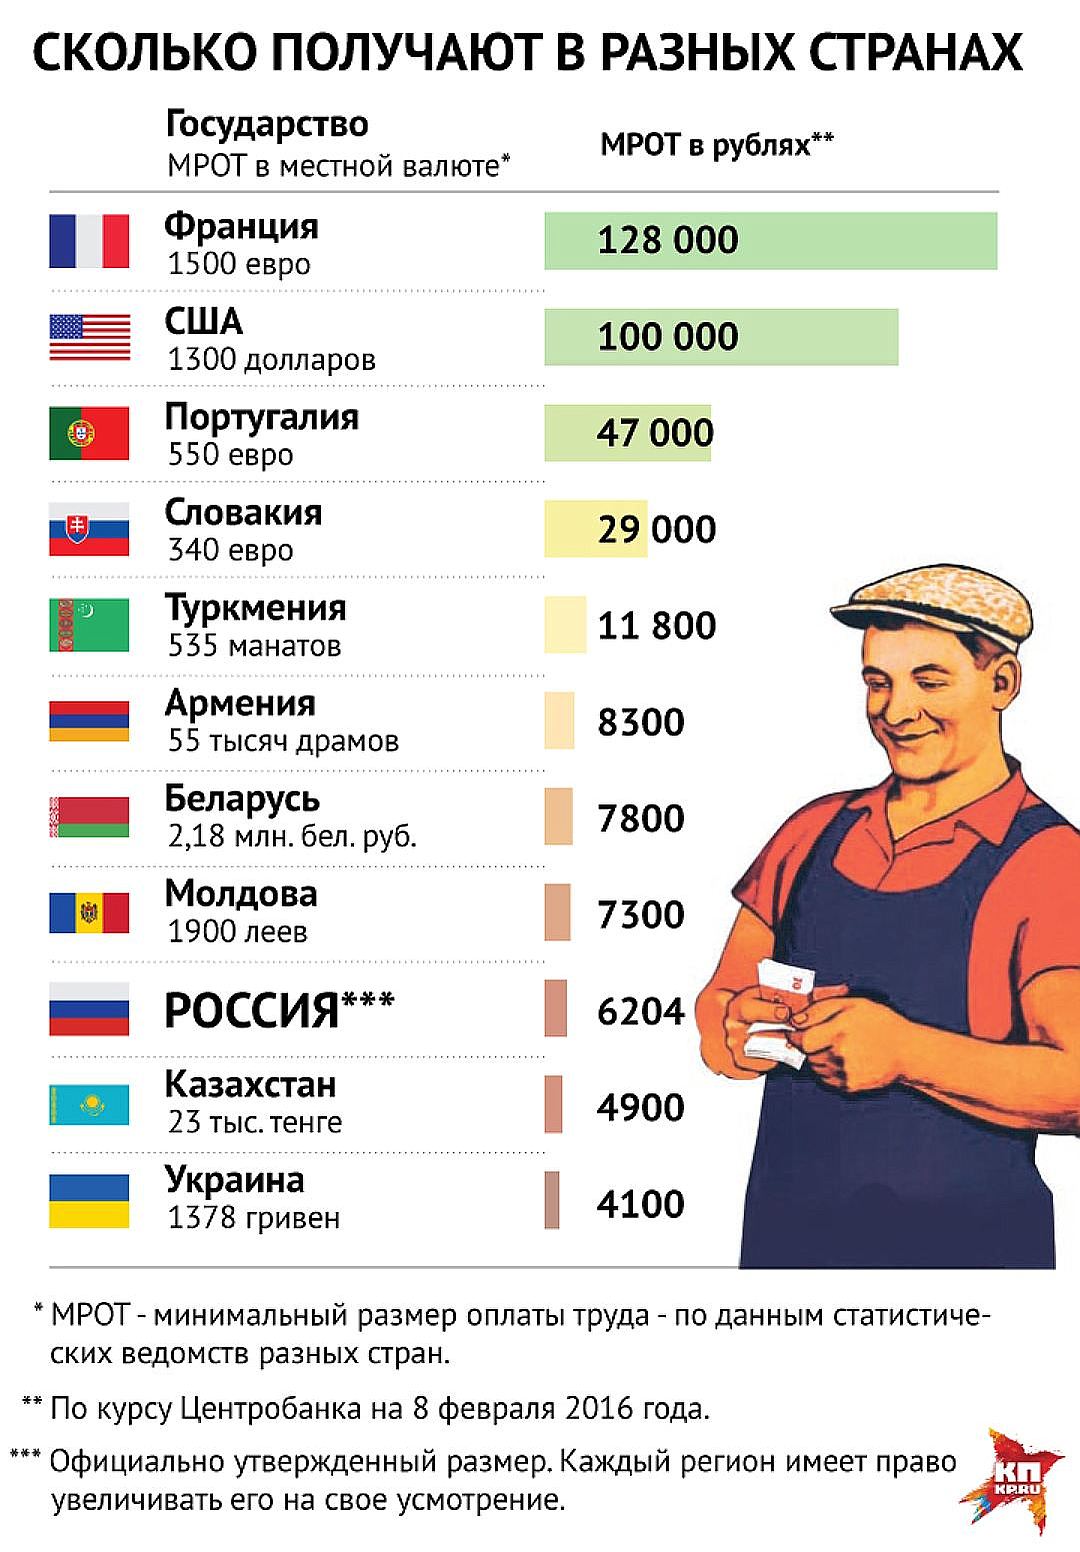 Цены и зарплаты в россии. Зарплата. Минимальная заплата в Росси. Зарплаты в разных странах. Заработные платы в России.